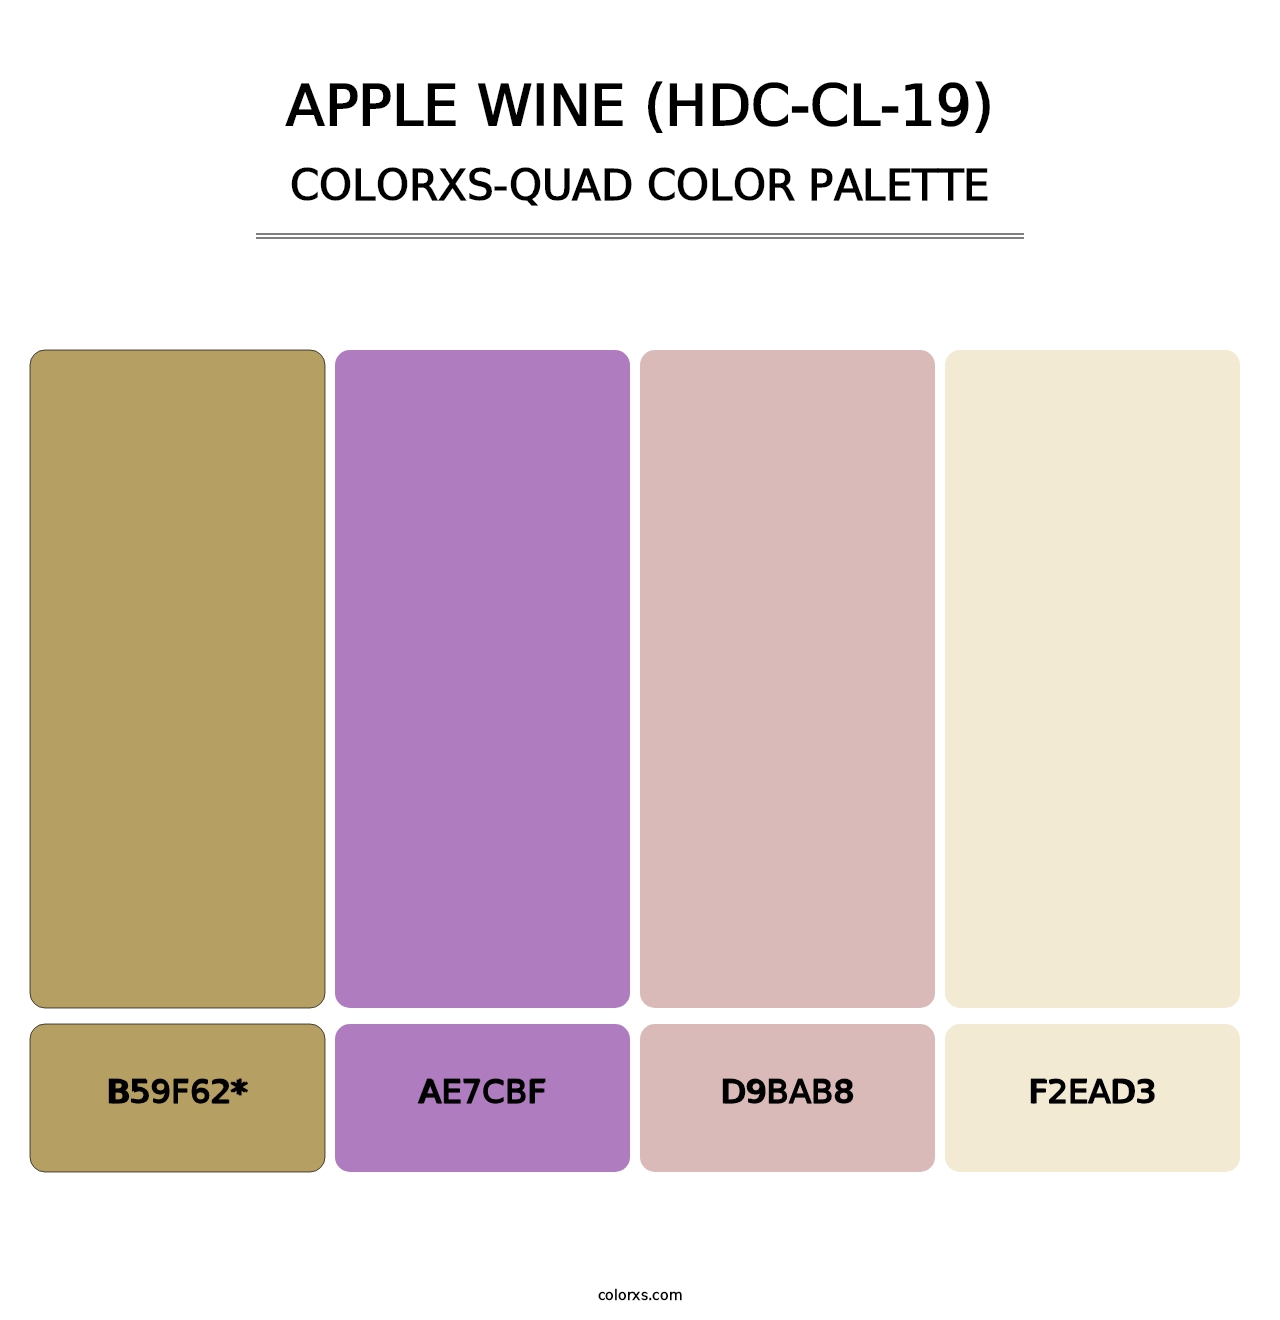 Apple Wine (HDC-CL-19) - Colorxs Quad Palette